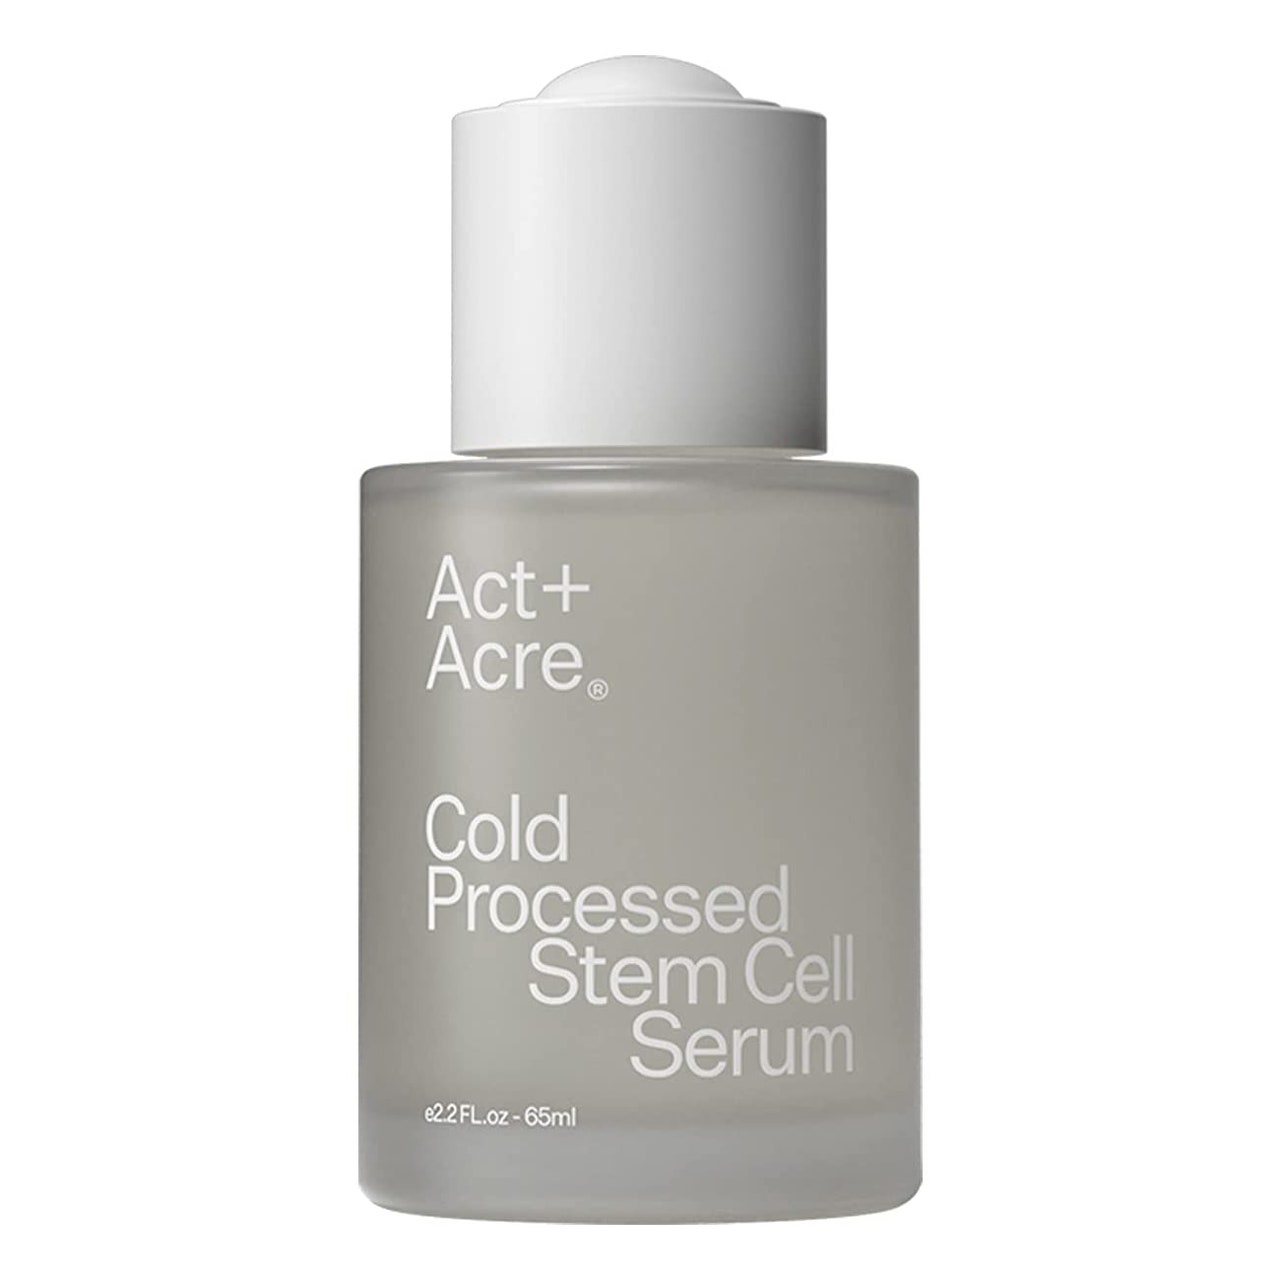 Act + Acre Cold Processed Stem Cell Serum trübe graue Serumflasche mit weißem Verschluss auf weißem Hintergrund